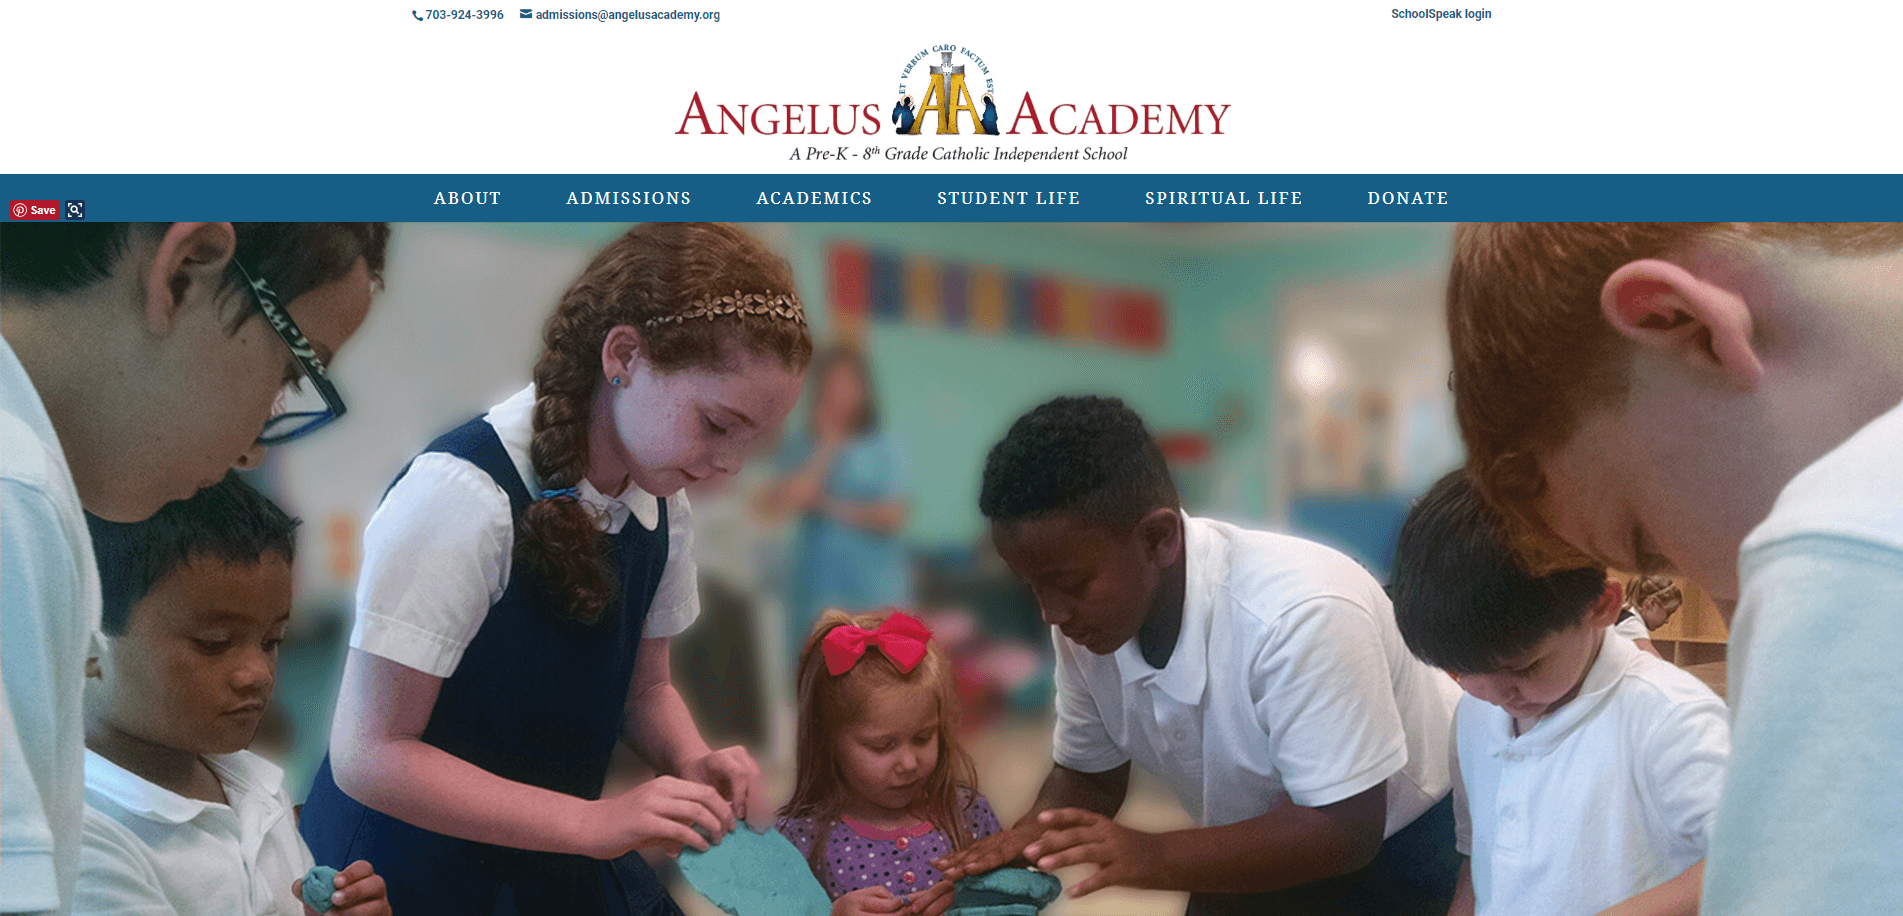 The Angélus homepage